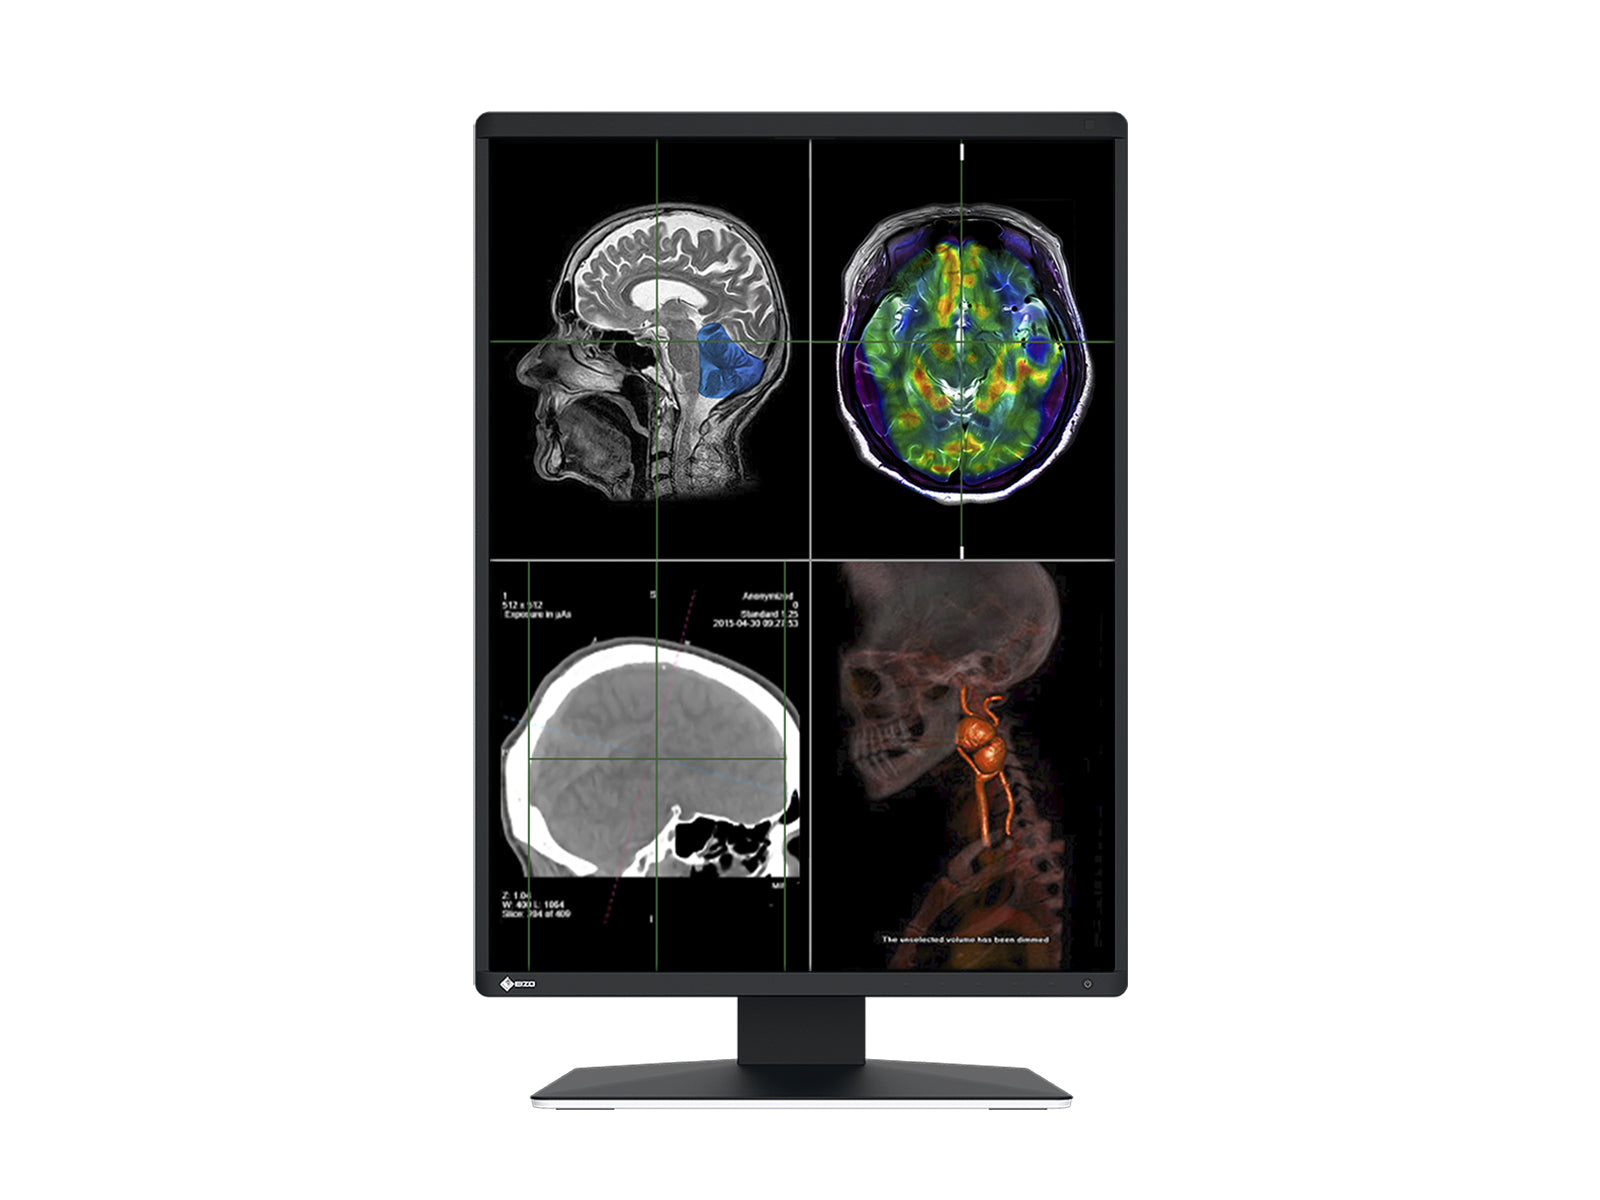 Eizo RadiForce RX370 3MP 21" Color LED General Radiology Diagnostic PACS Display (RX370) Monitors.com 